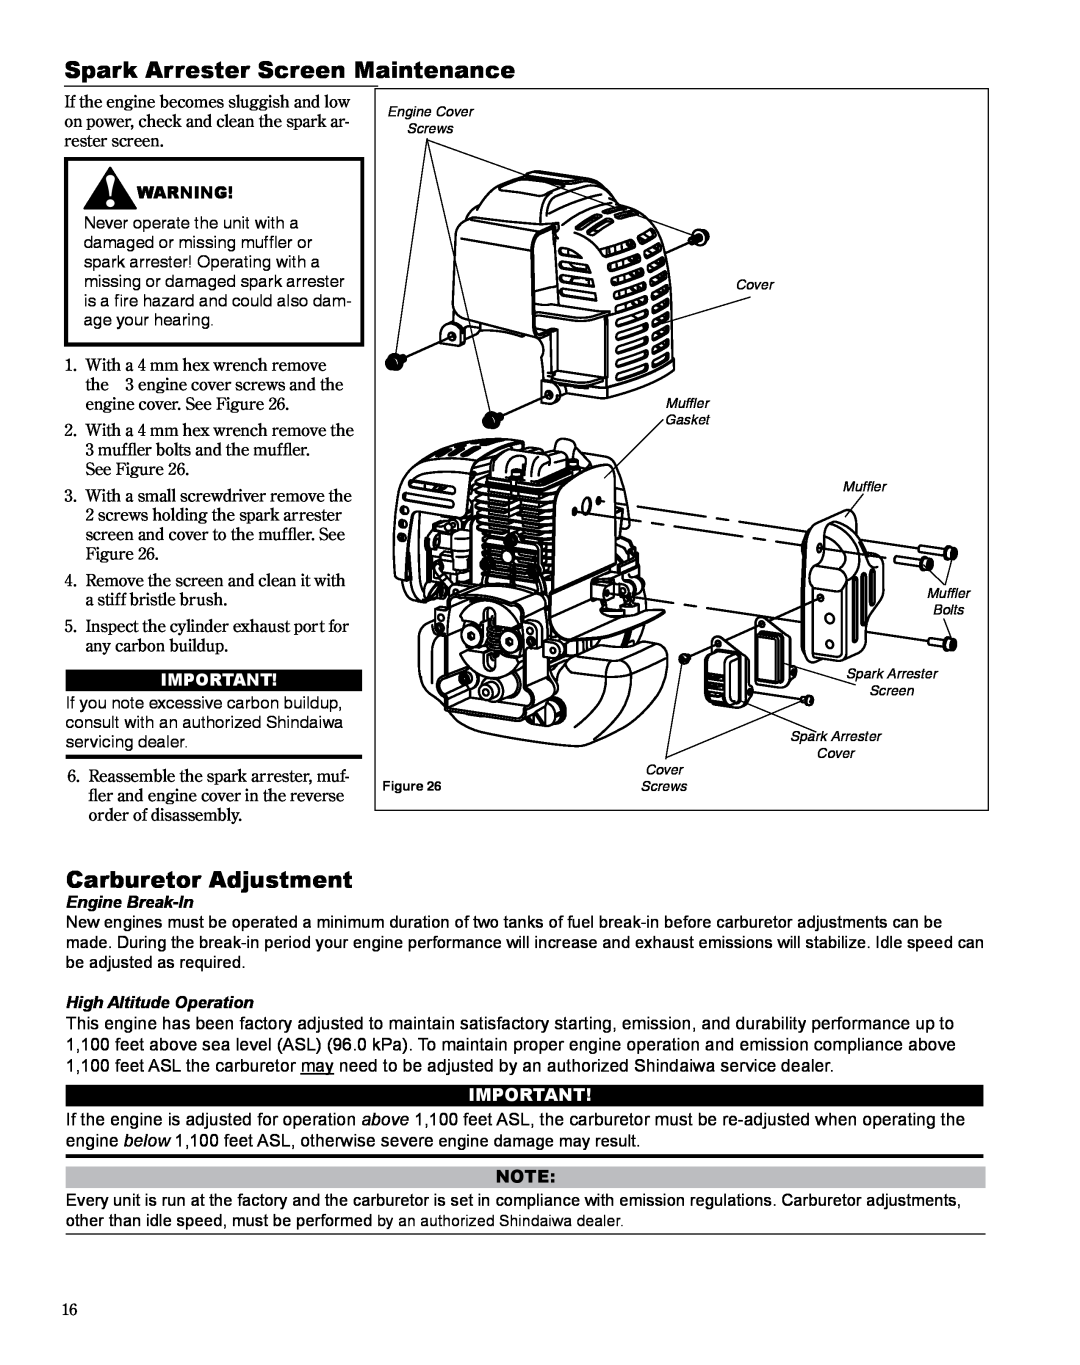 Shindaiwa HT254EF manual Spark Arrester Screen Maintenance, Carburetor Adjustment, Engine Break-In, High Altitude Operation 